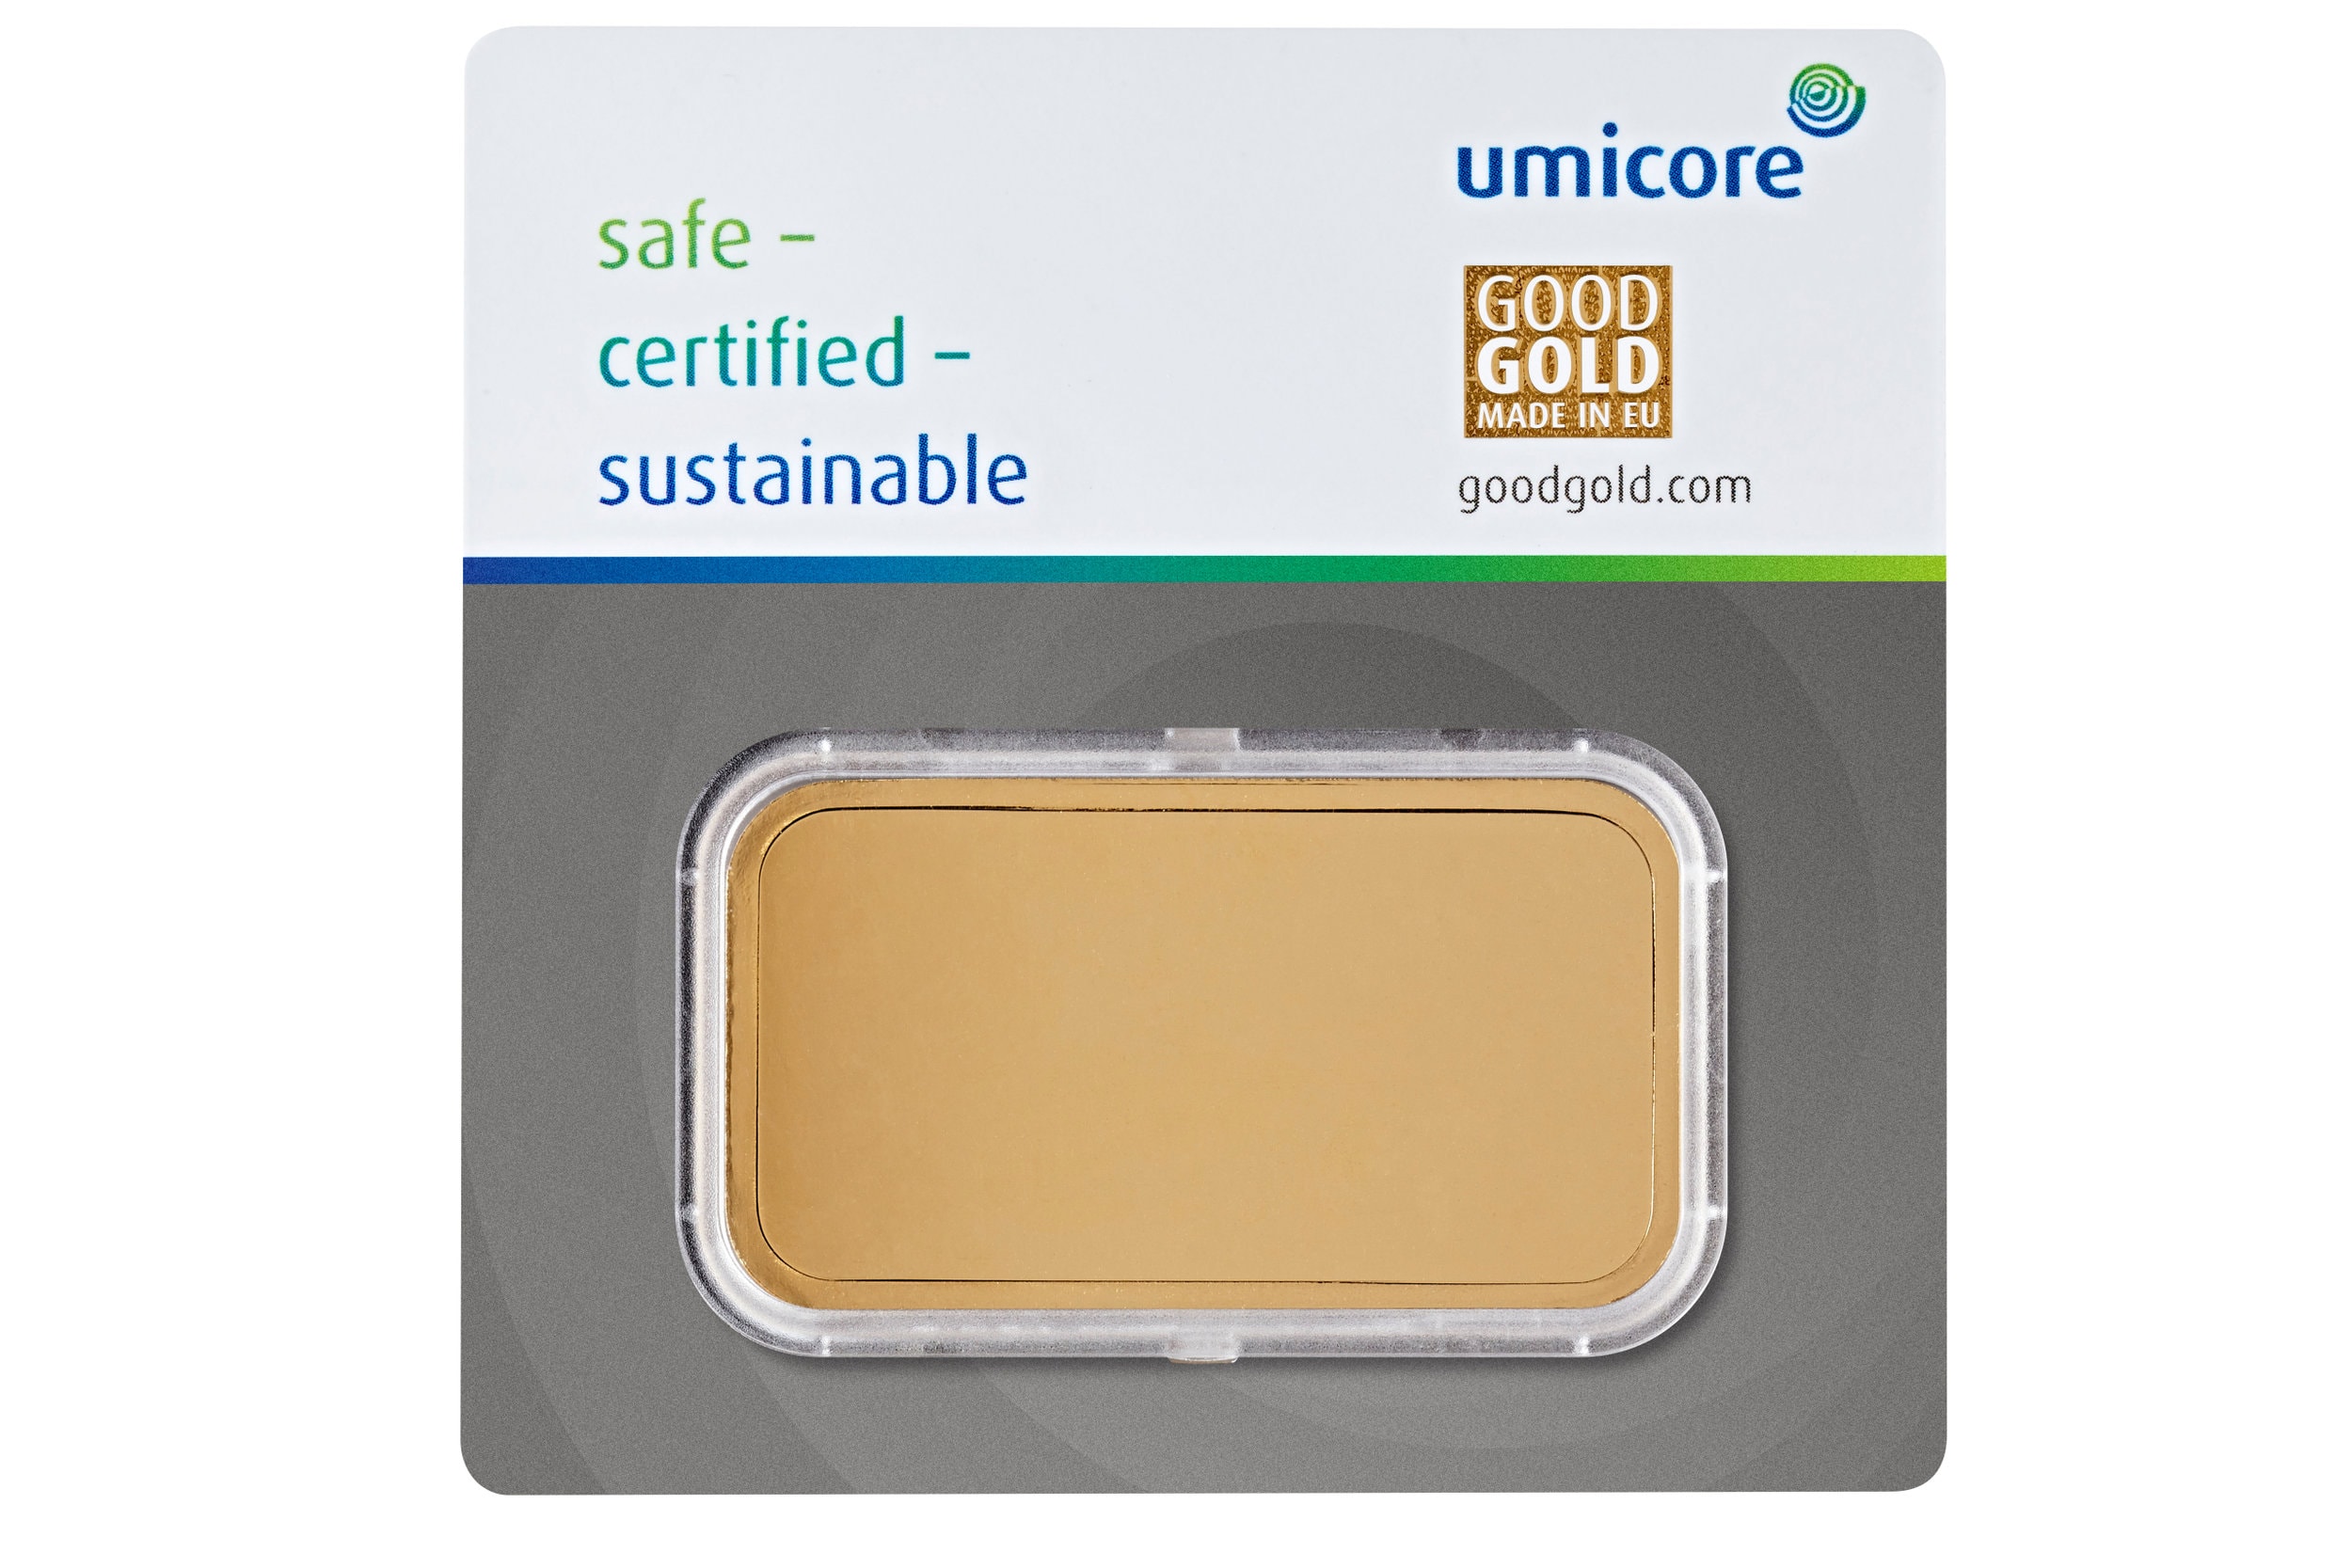 Ontwerp van Umicore goudbaar 100 gram